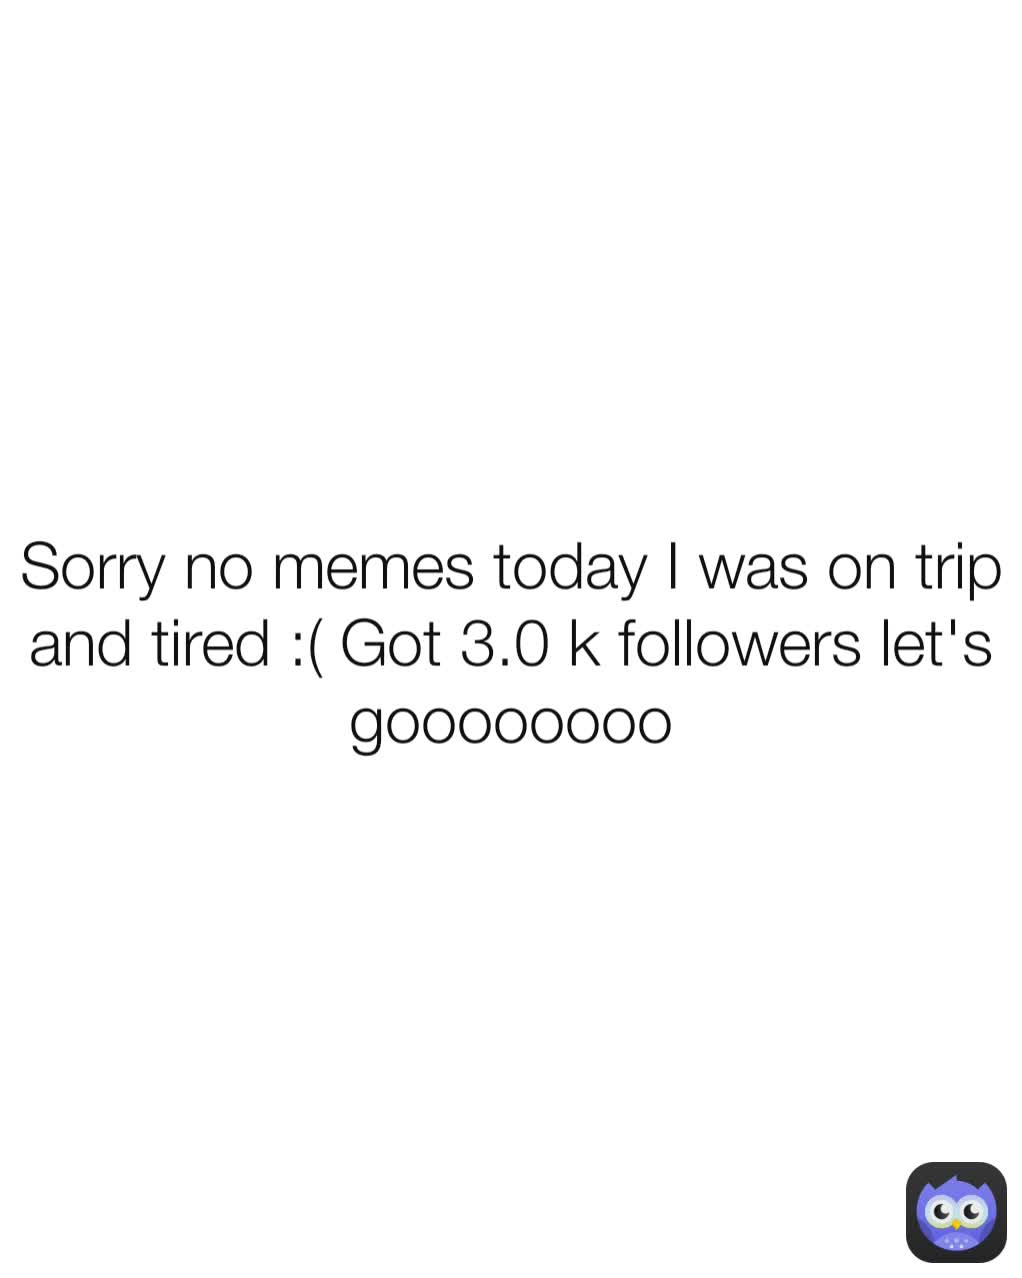 Sorry no memes today I was on trip and tired :( Got 3.0 k followers let's goooooooo